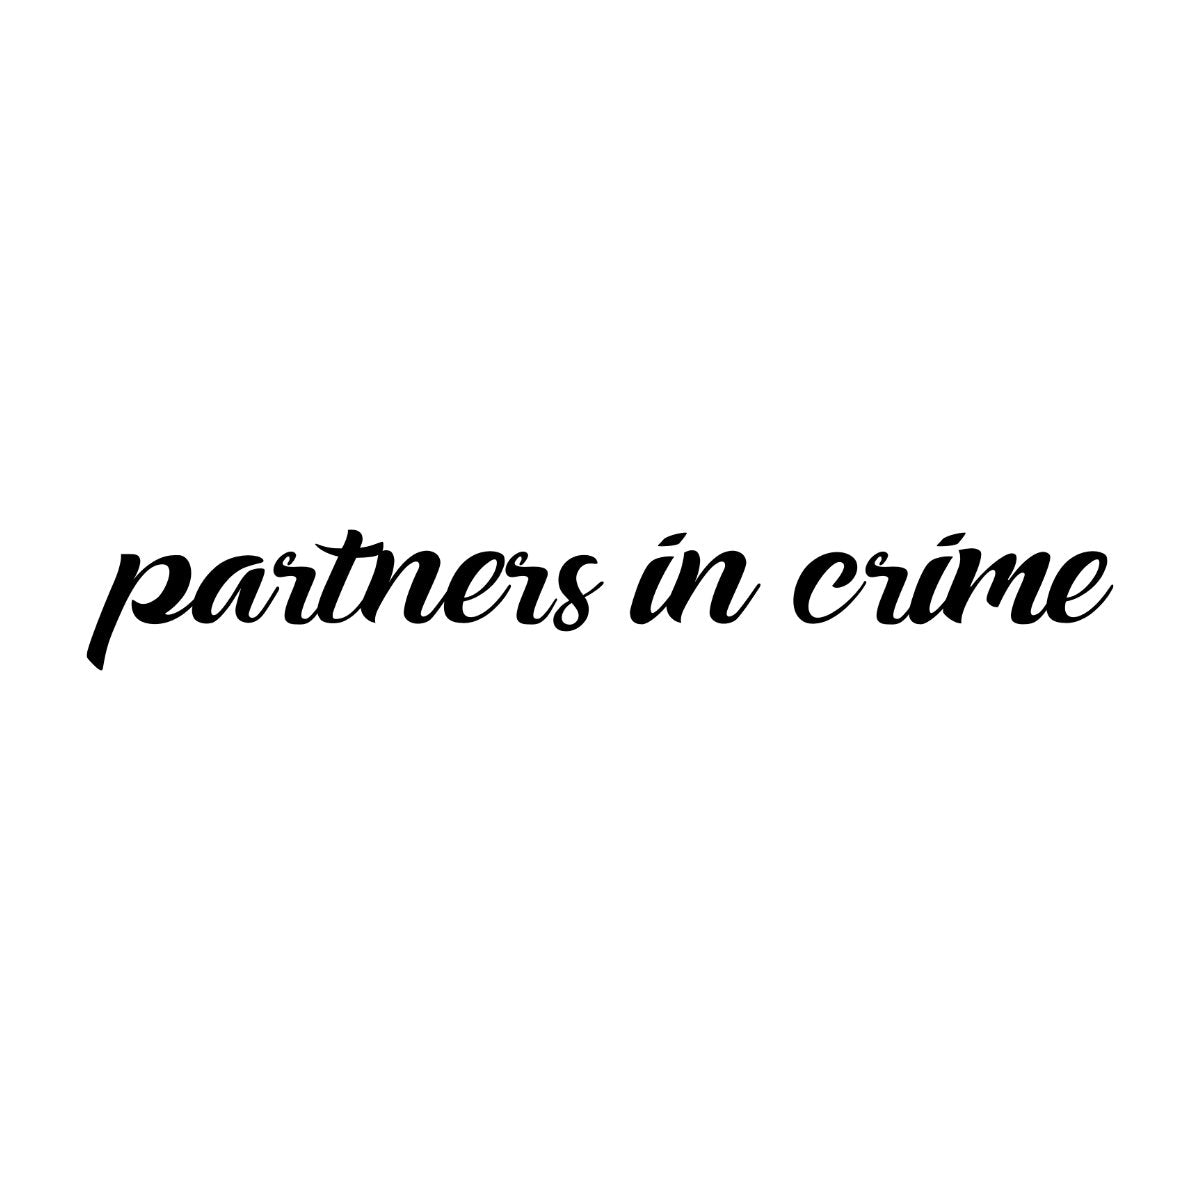 Balti džemperiai be gobtuvų poroms "Partners in crime"